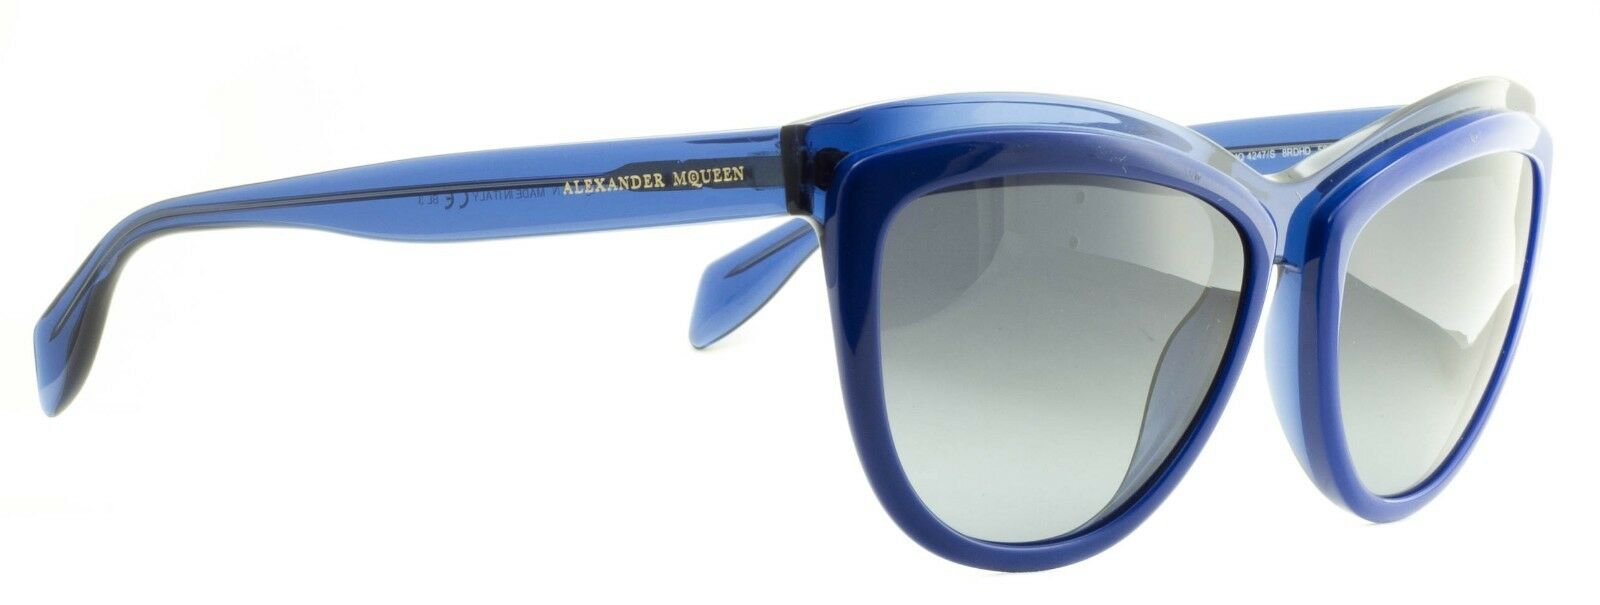 ALEXANDER McQUEEN AMQ 4247/S 8RDHD Eyewear SUNGLASSES Glasses Shades BNIB  Italy - GGV Eyewear